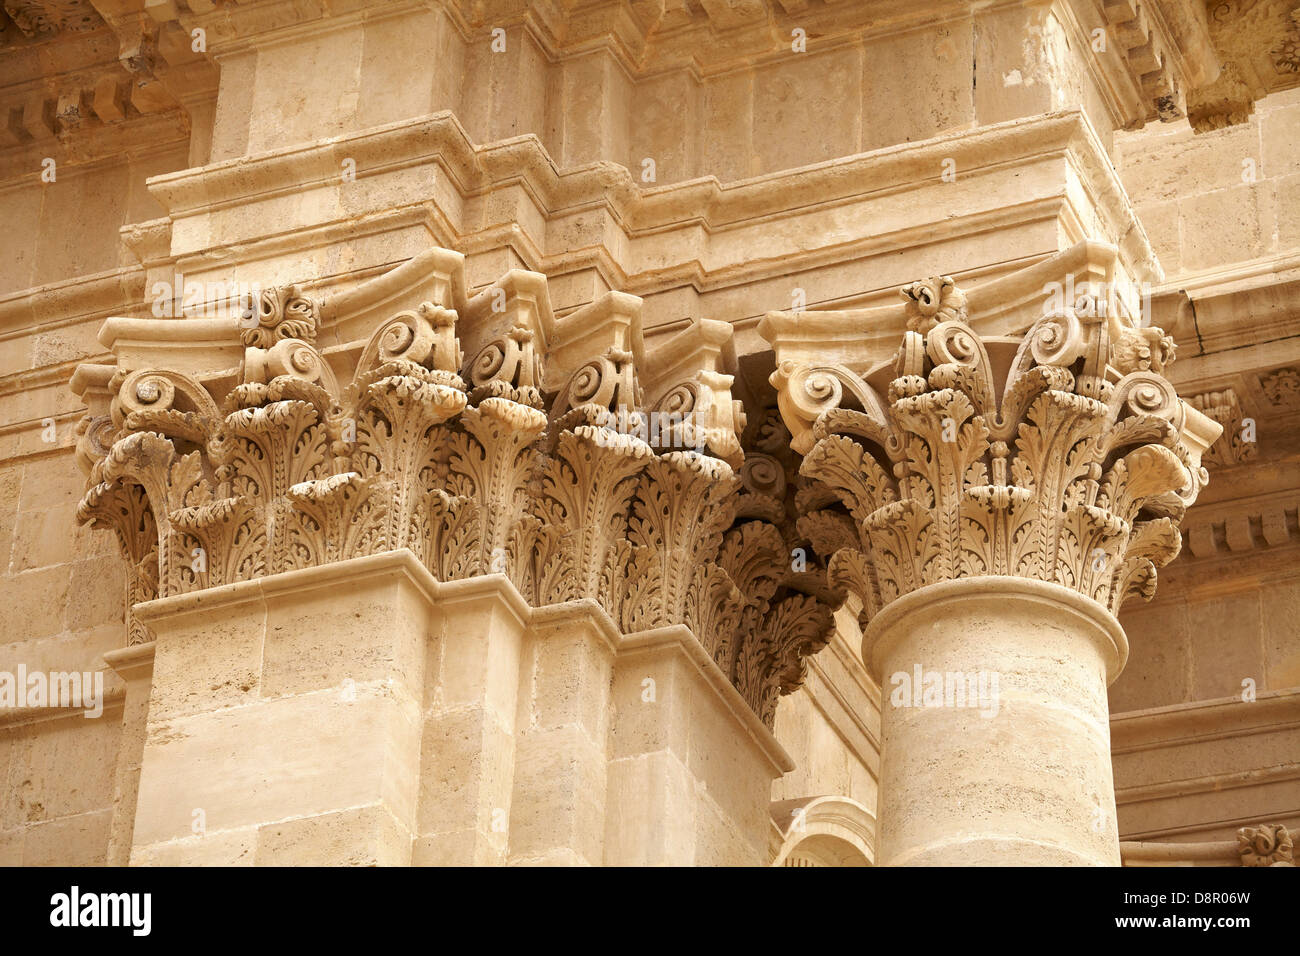 Détail de l'architecture baroque de la Cathédrale ou Duomo de Florence (Firenze), Sicile, Italie l'UNESCO Banque D'Images